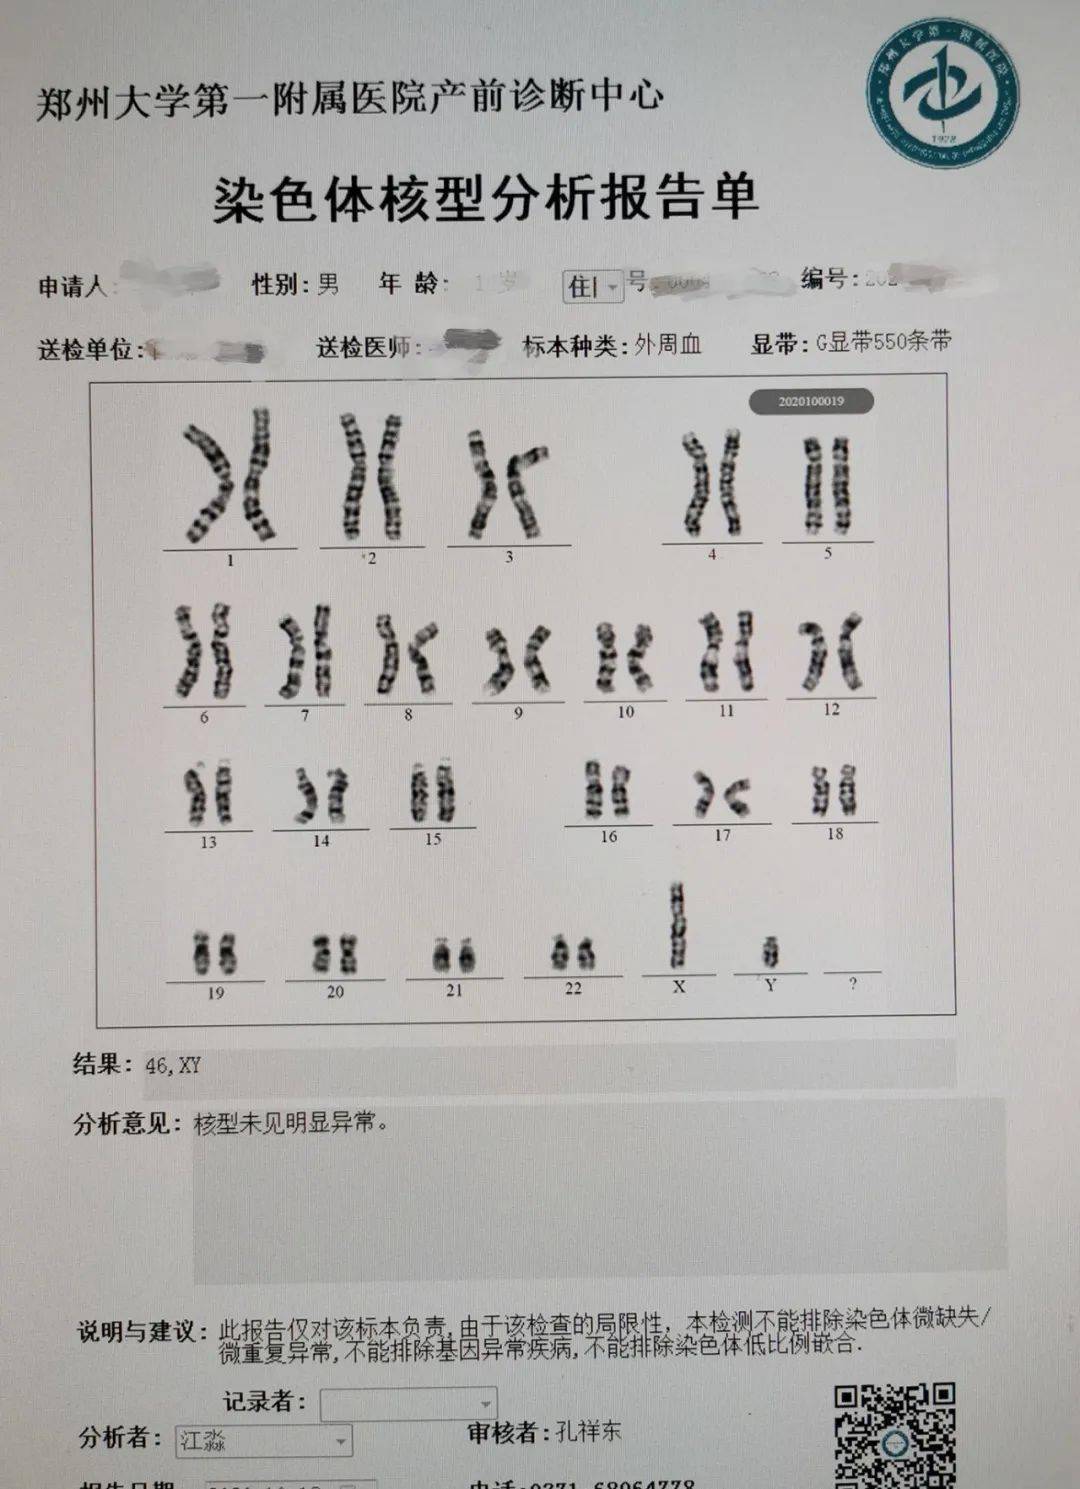 染色体核型分析报告图片